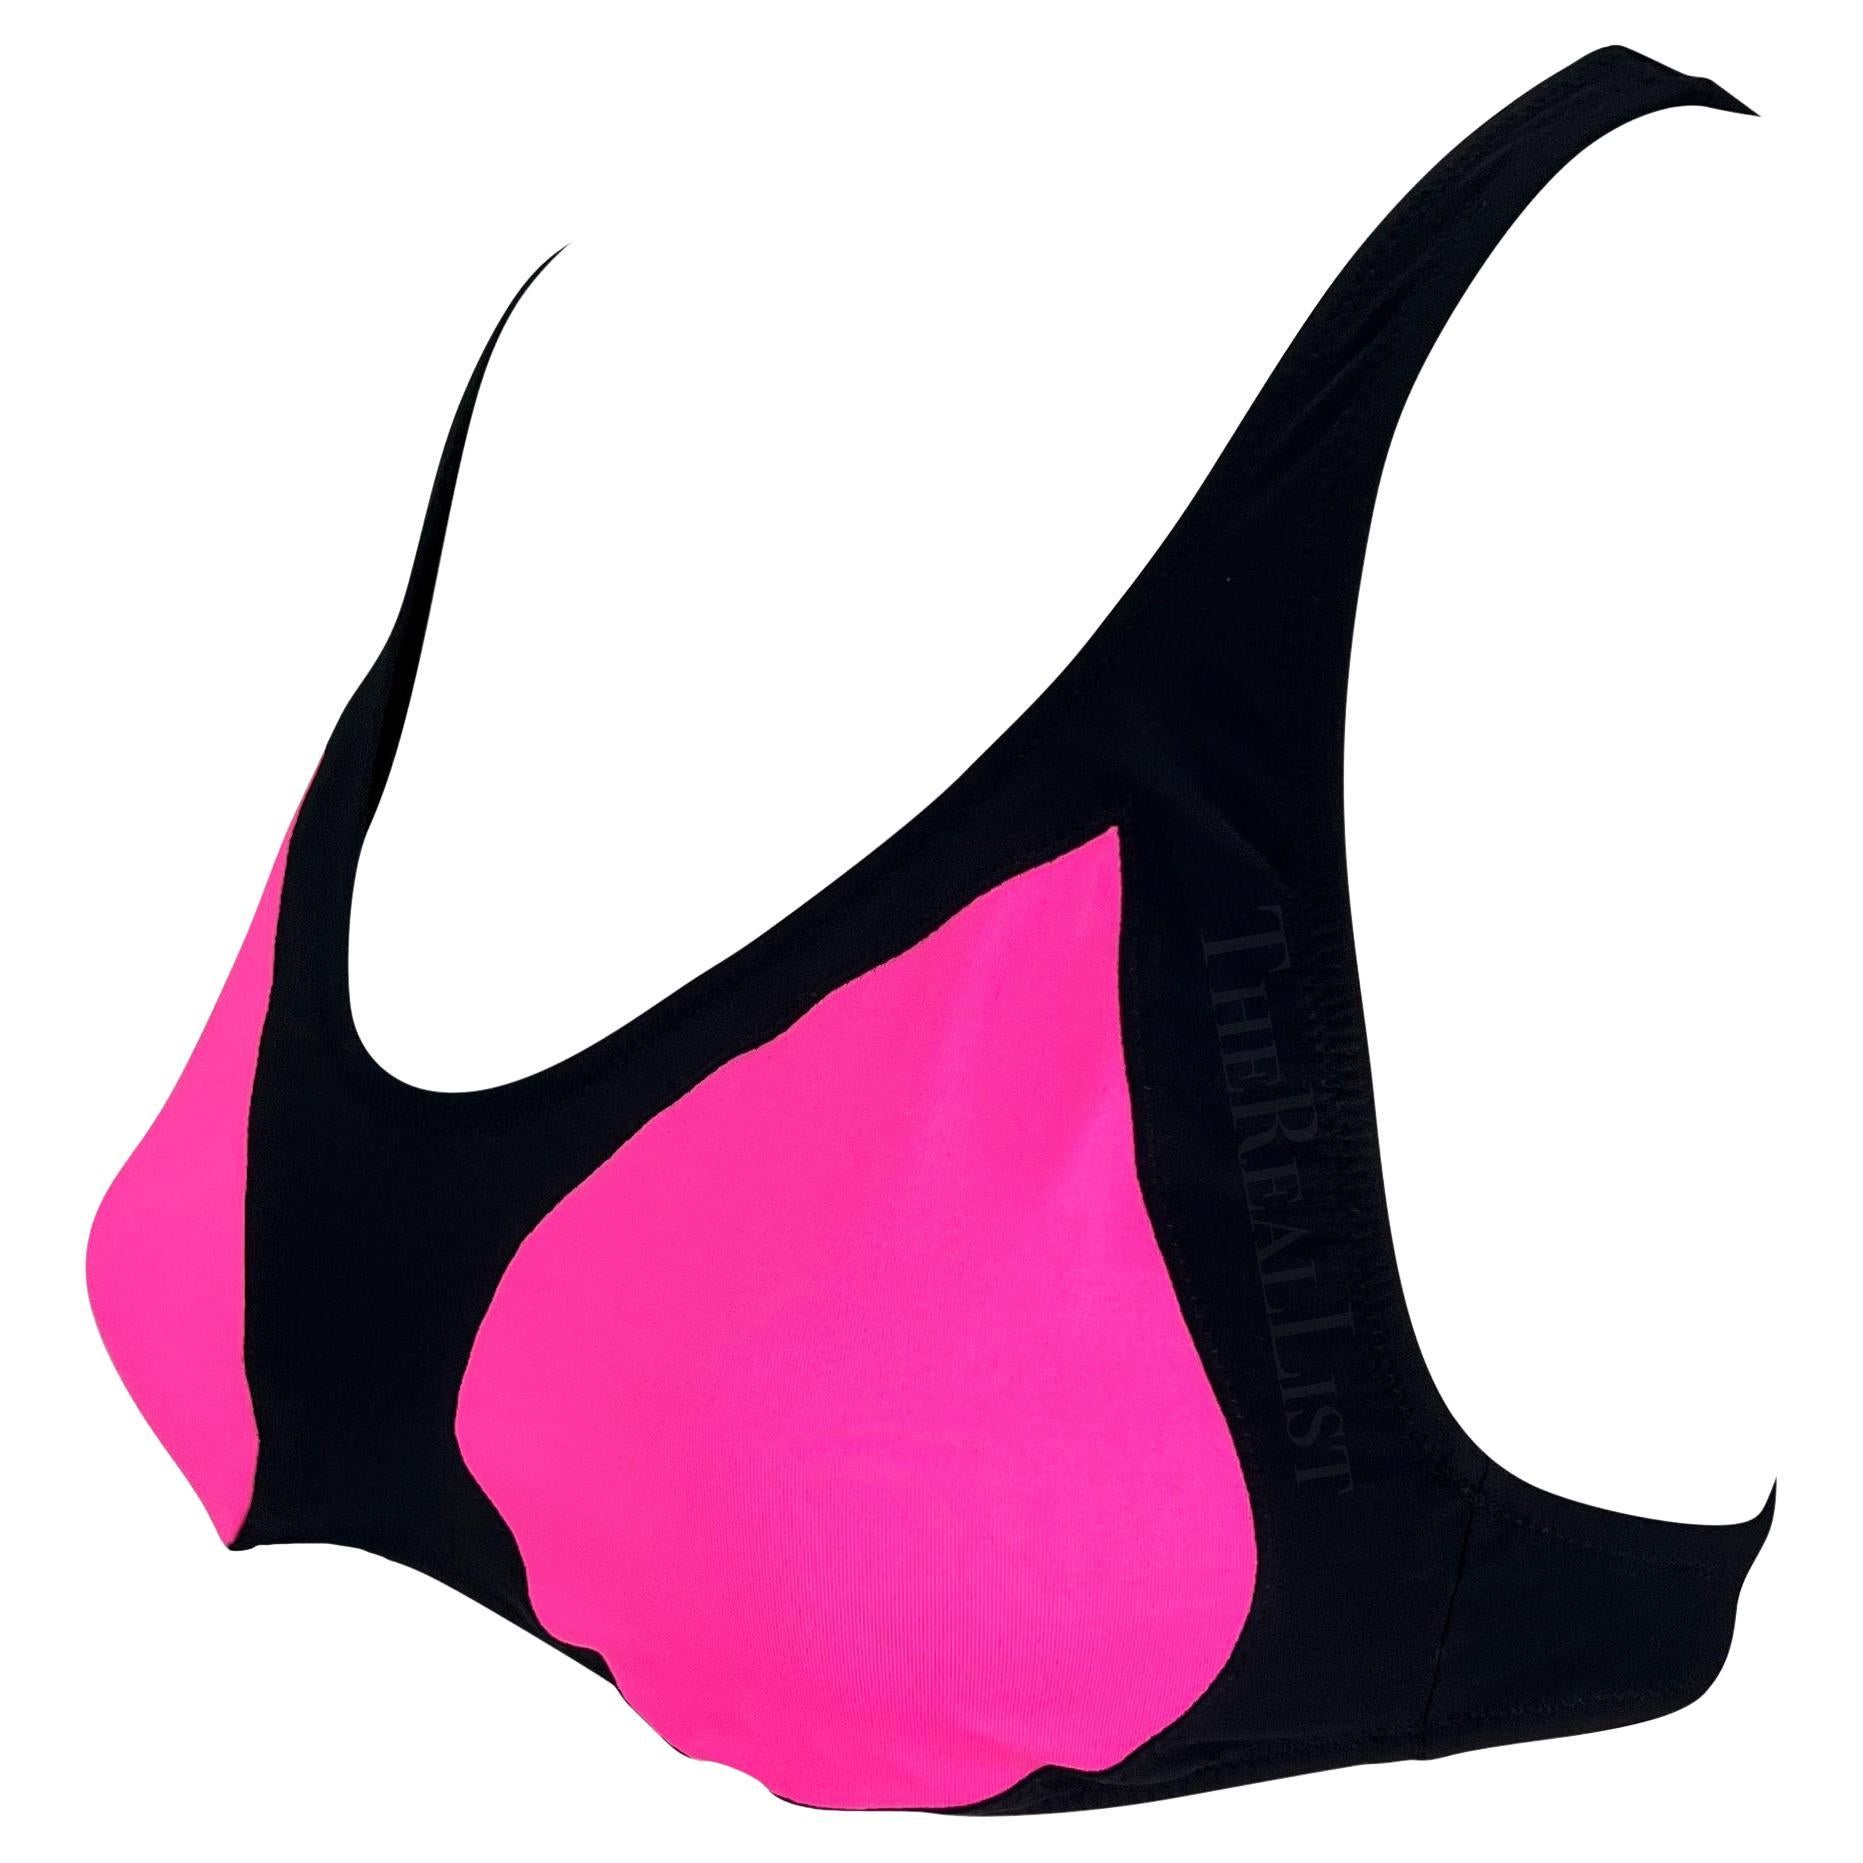 Voici un fabuleux haut de bikini/bralette noir et rose vif Alexander Mcqueen. Un maillot de bain similaire, issu de la collection Resort 2009, a été présenté sur le podium par Michaela Kocianova. Ce haut de bikini noir arbore des couleurs rose vif